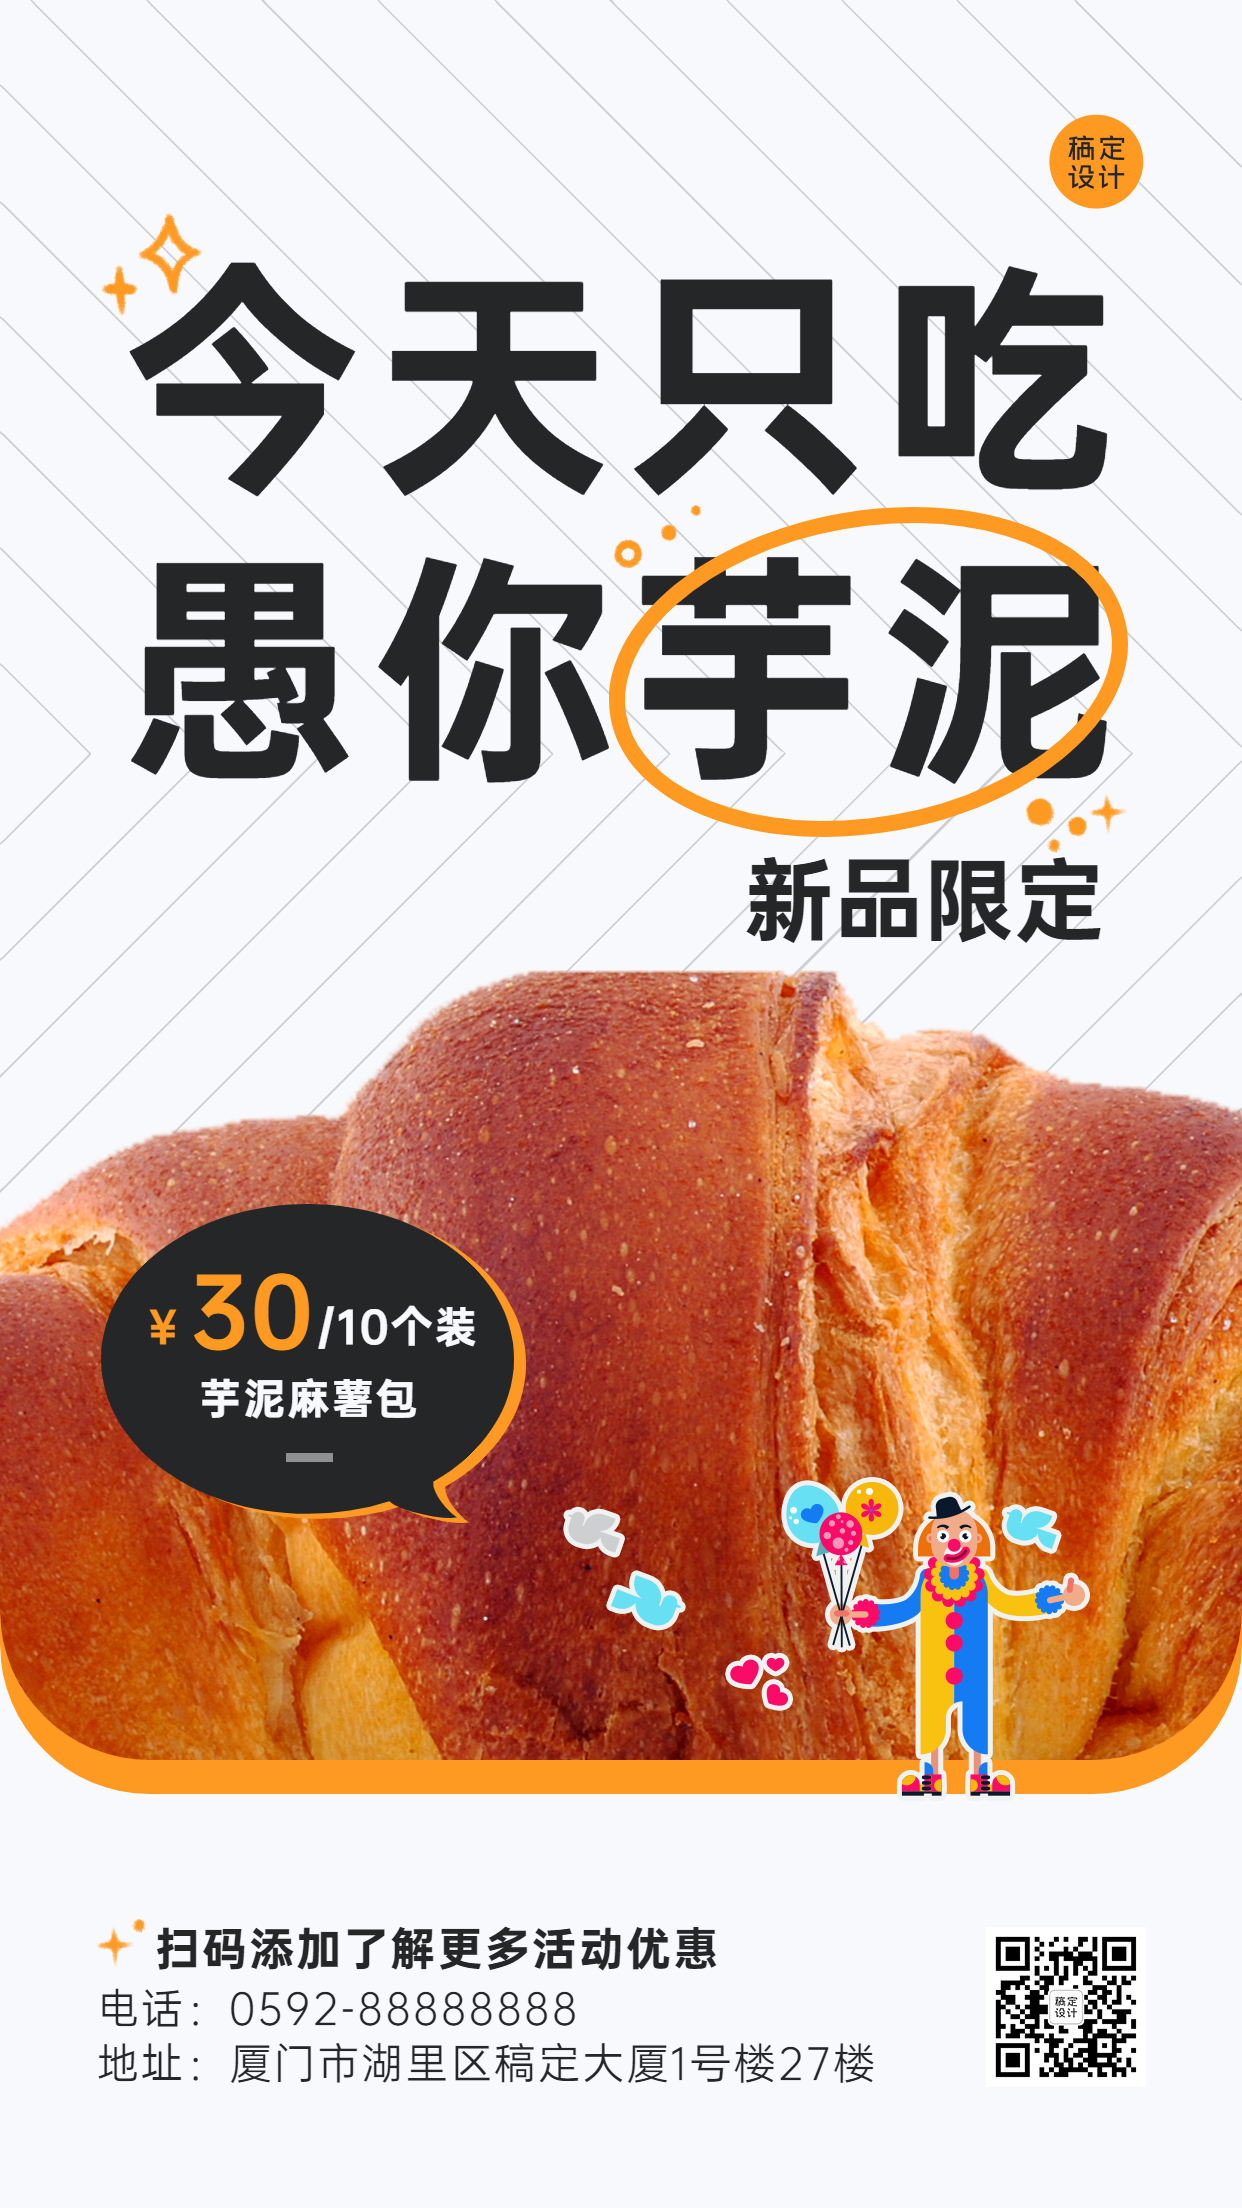 愚人节面包烘焙产品营销餐饮手机海报预览效果